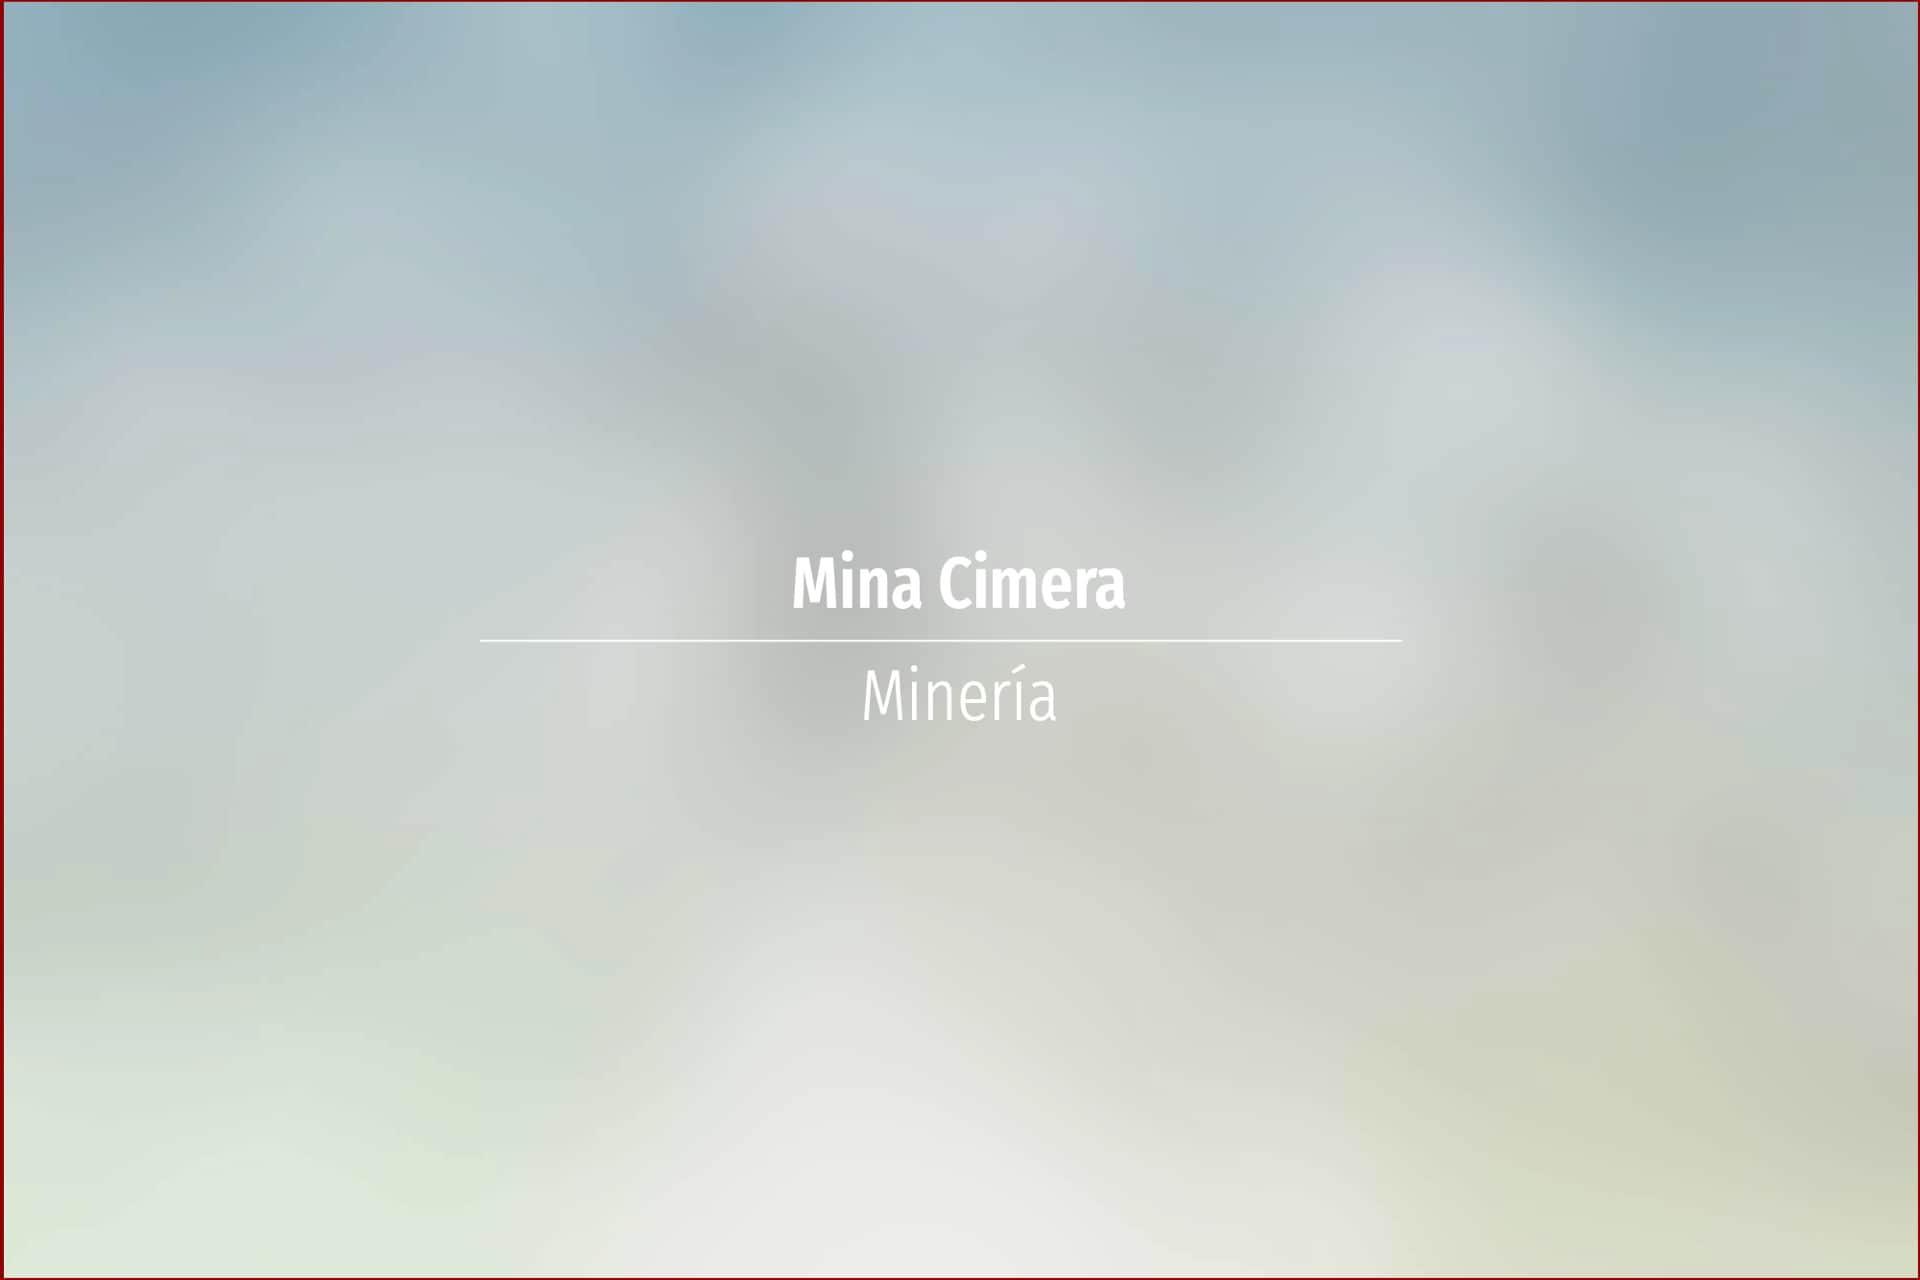 Mina Cimera